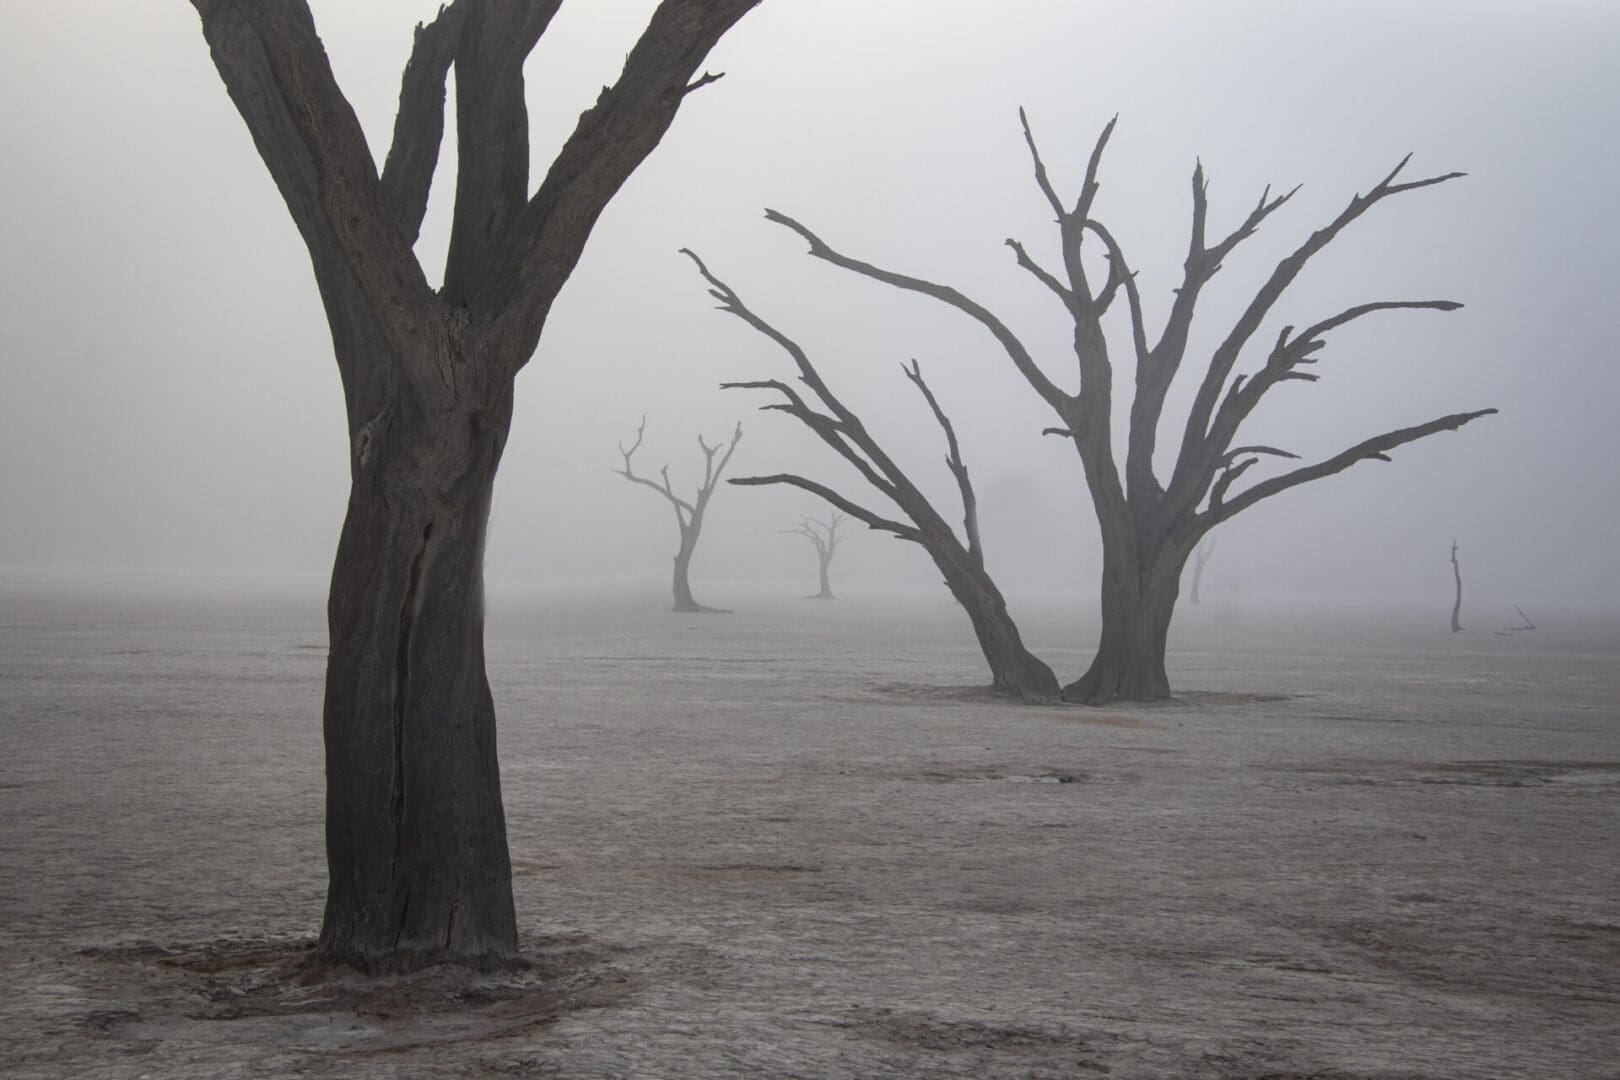 Dead trees in a foggy field.